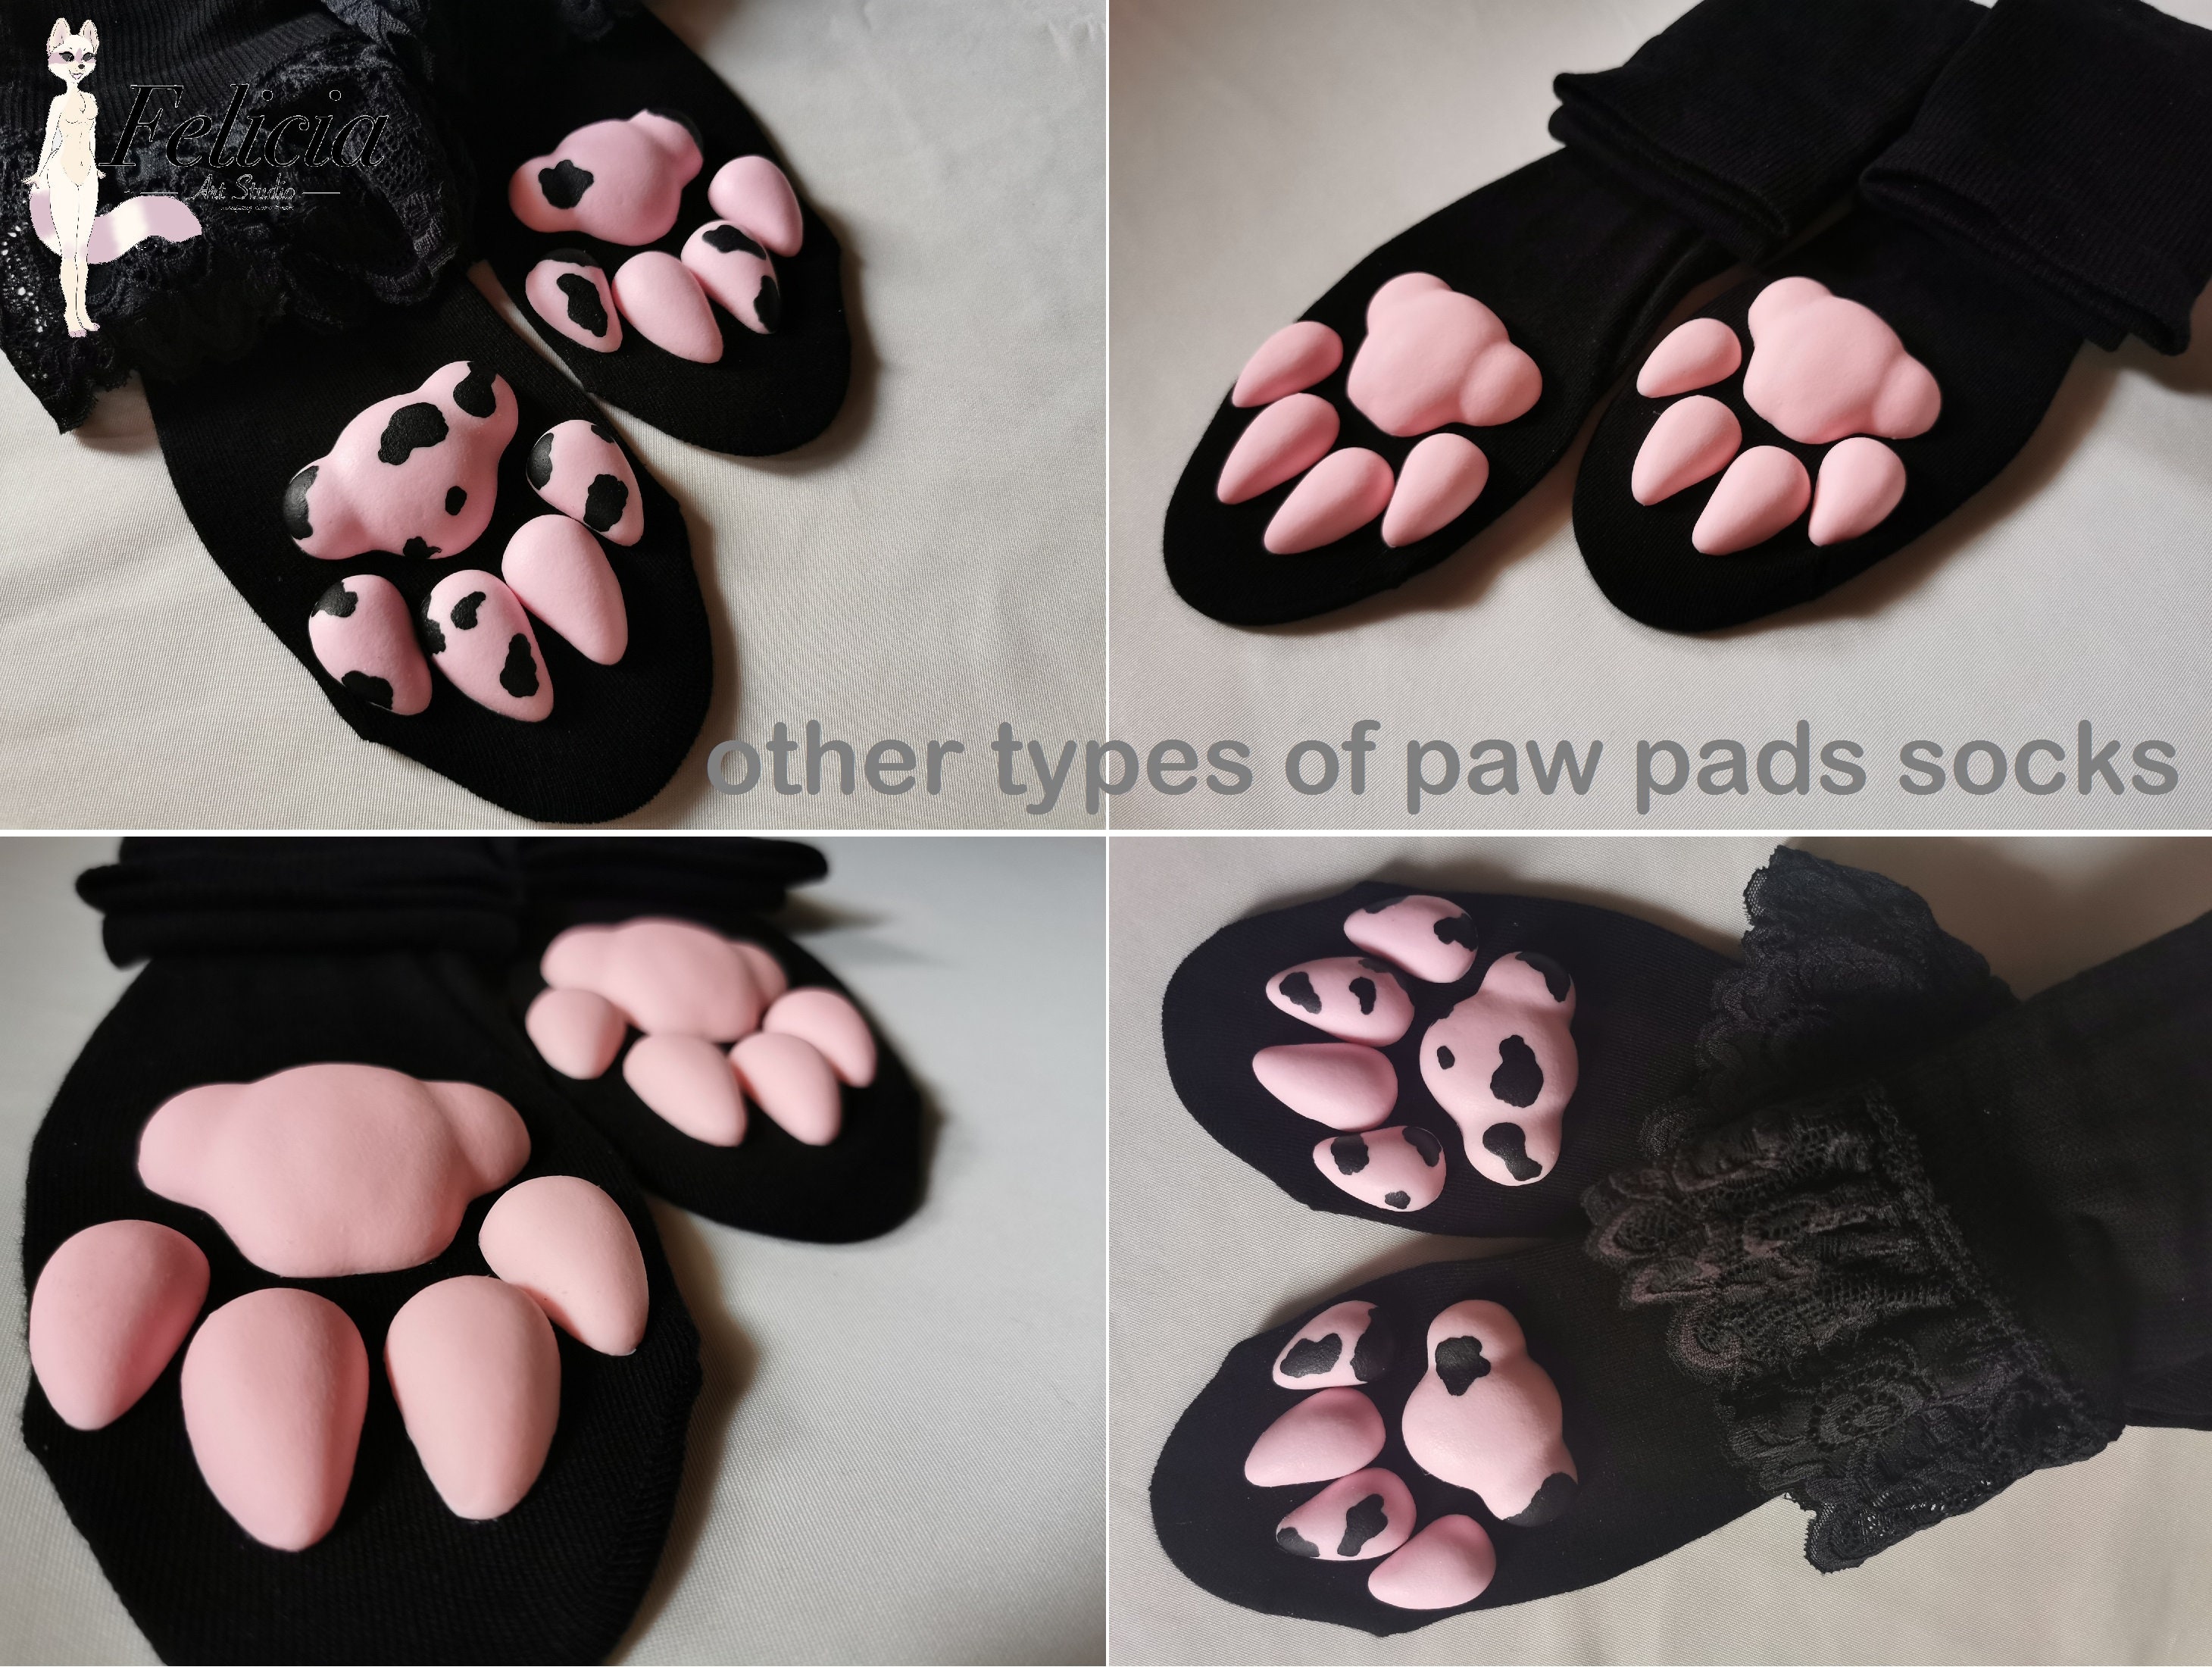 Paw Print Pad Kit – FluffsPets